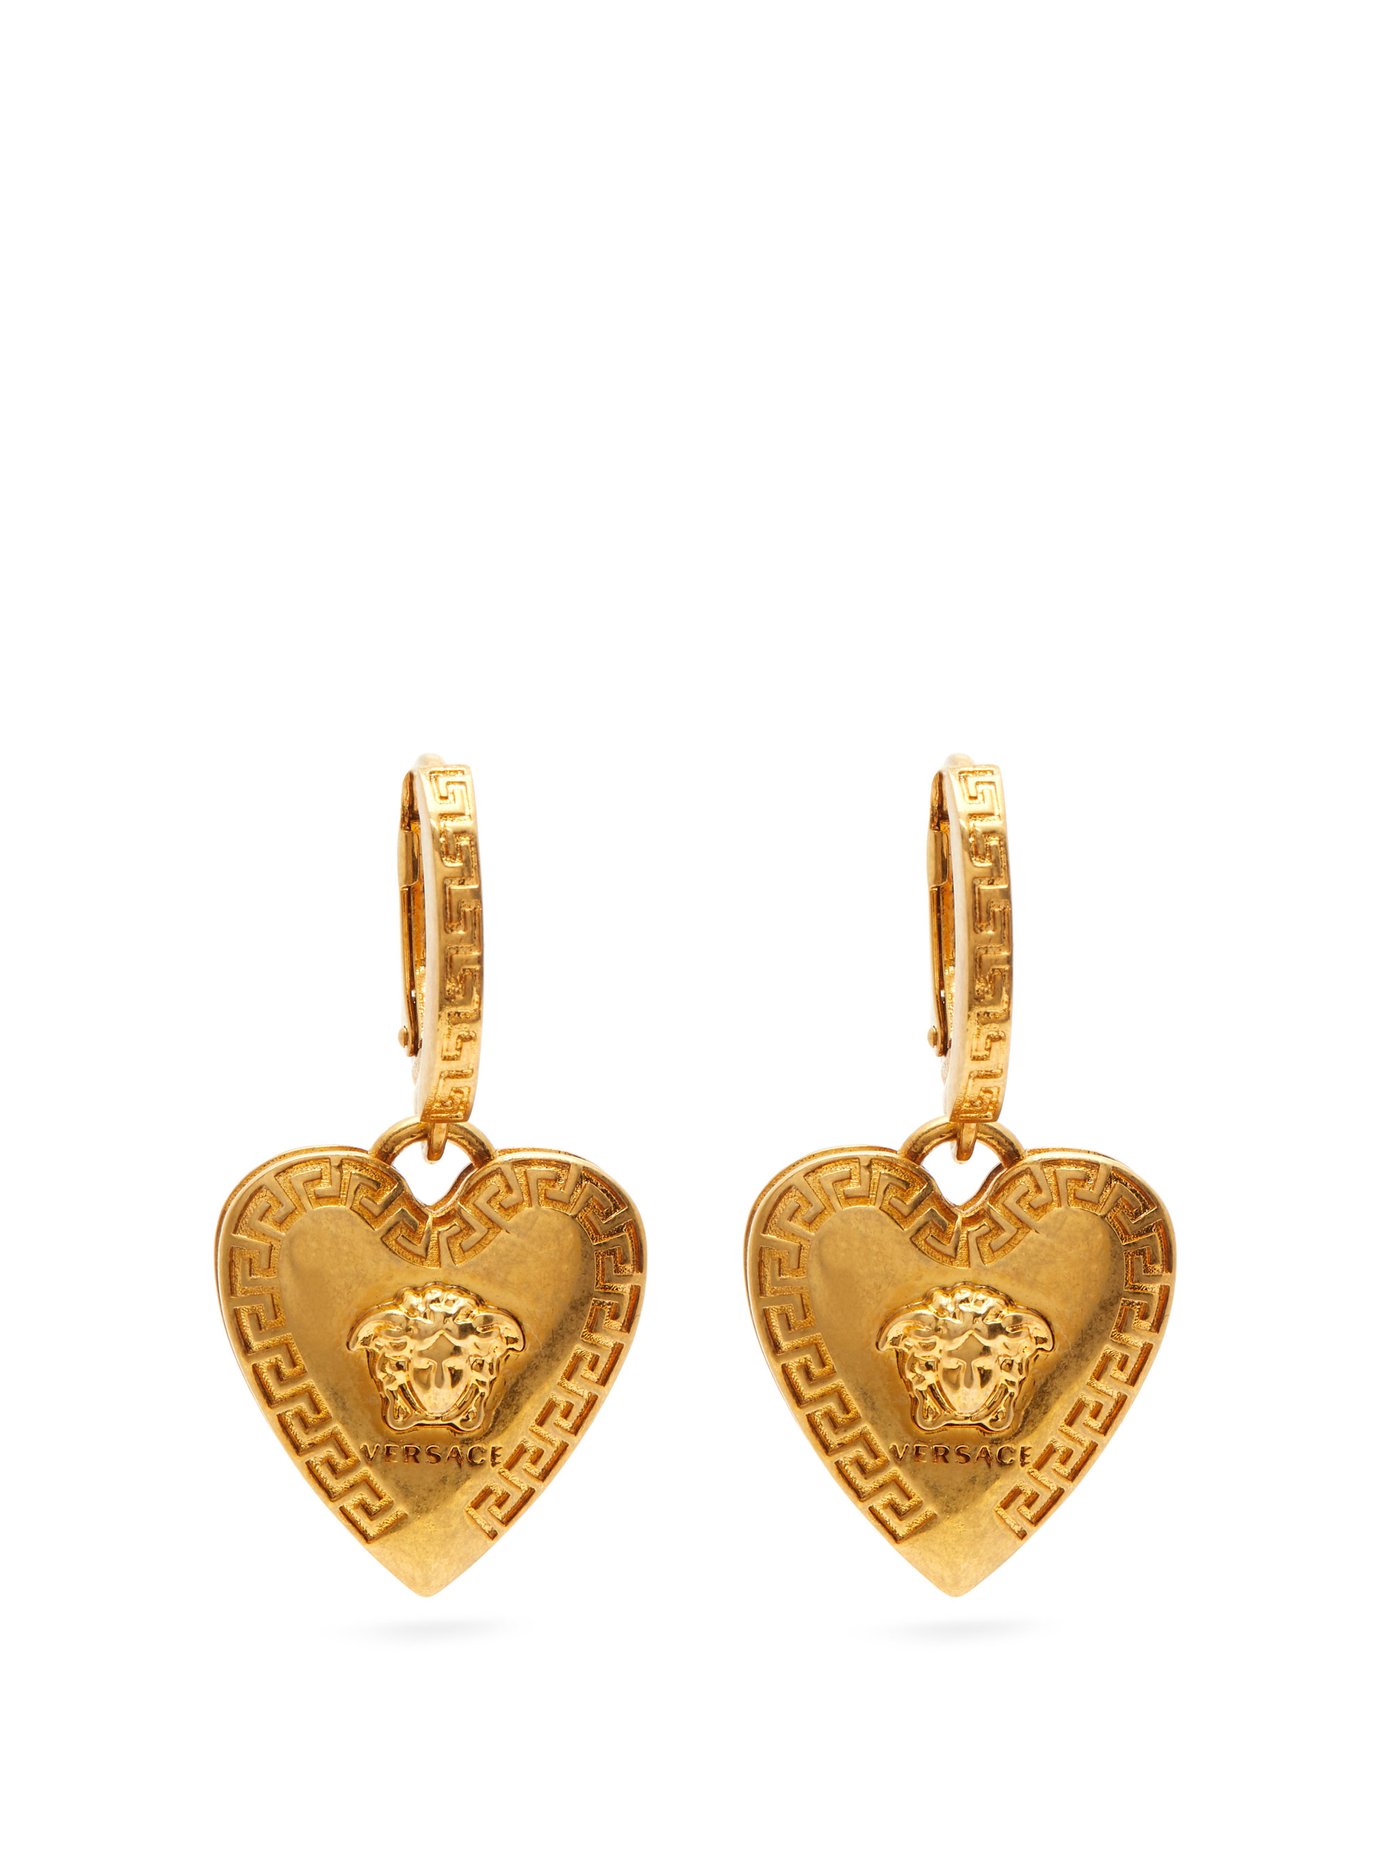 versace heart earrings